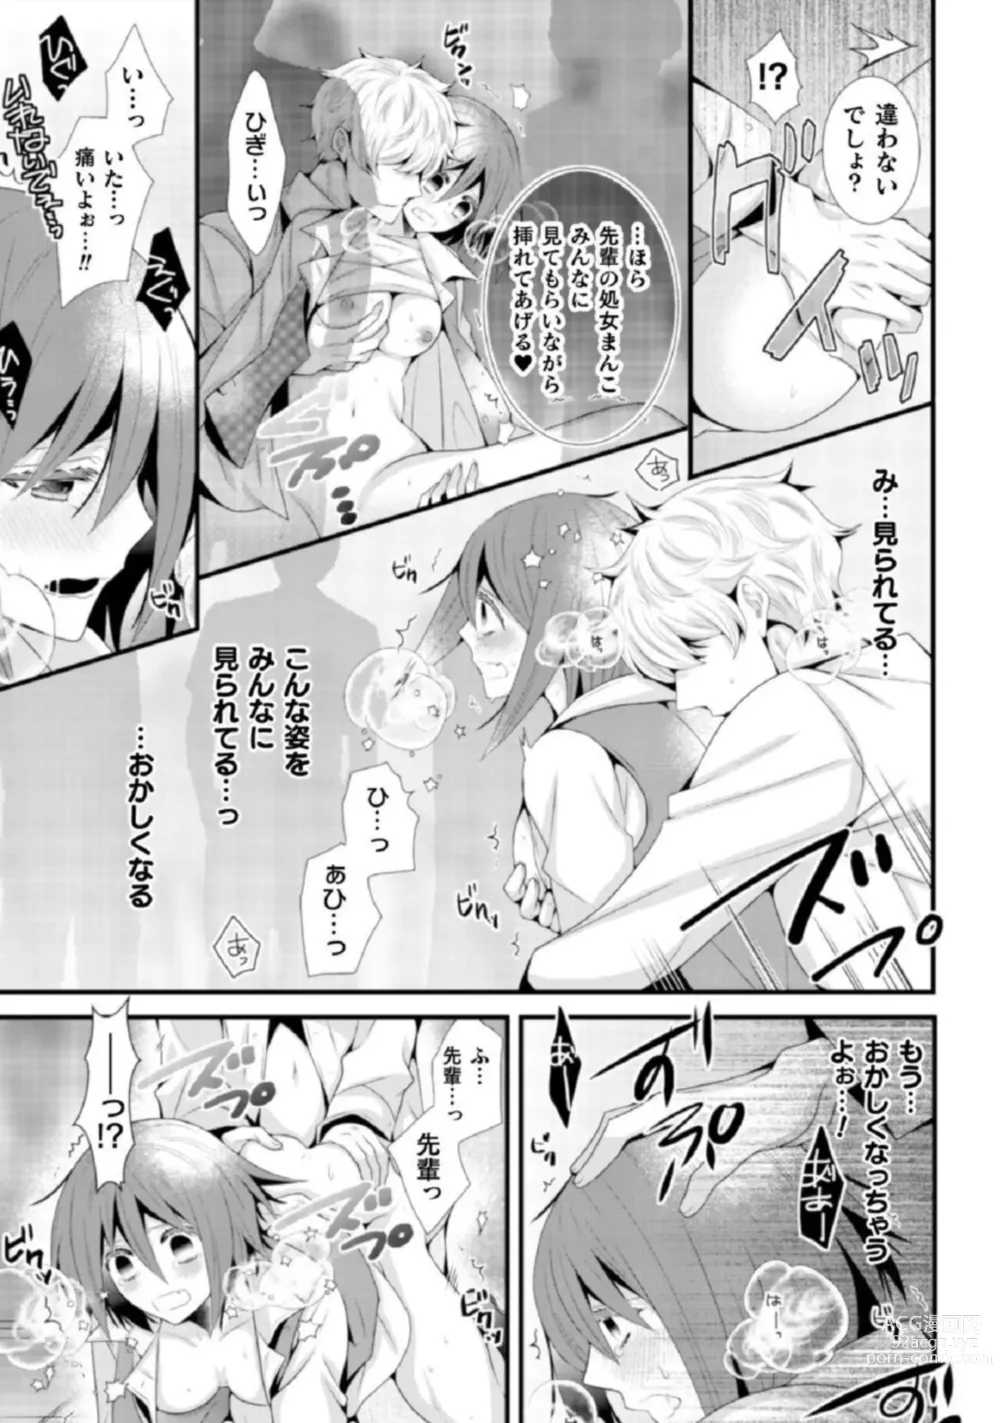 Page 14 of manga Shokorashukureansorojī Ibitsuai ～ Yandere Kareshi no Omoi ai ni Kakowarete ～Vol.2